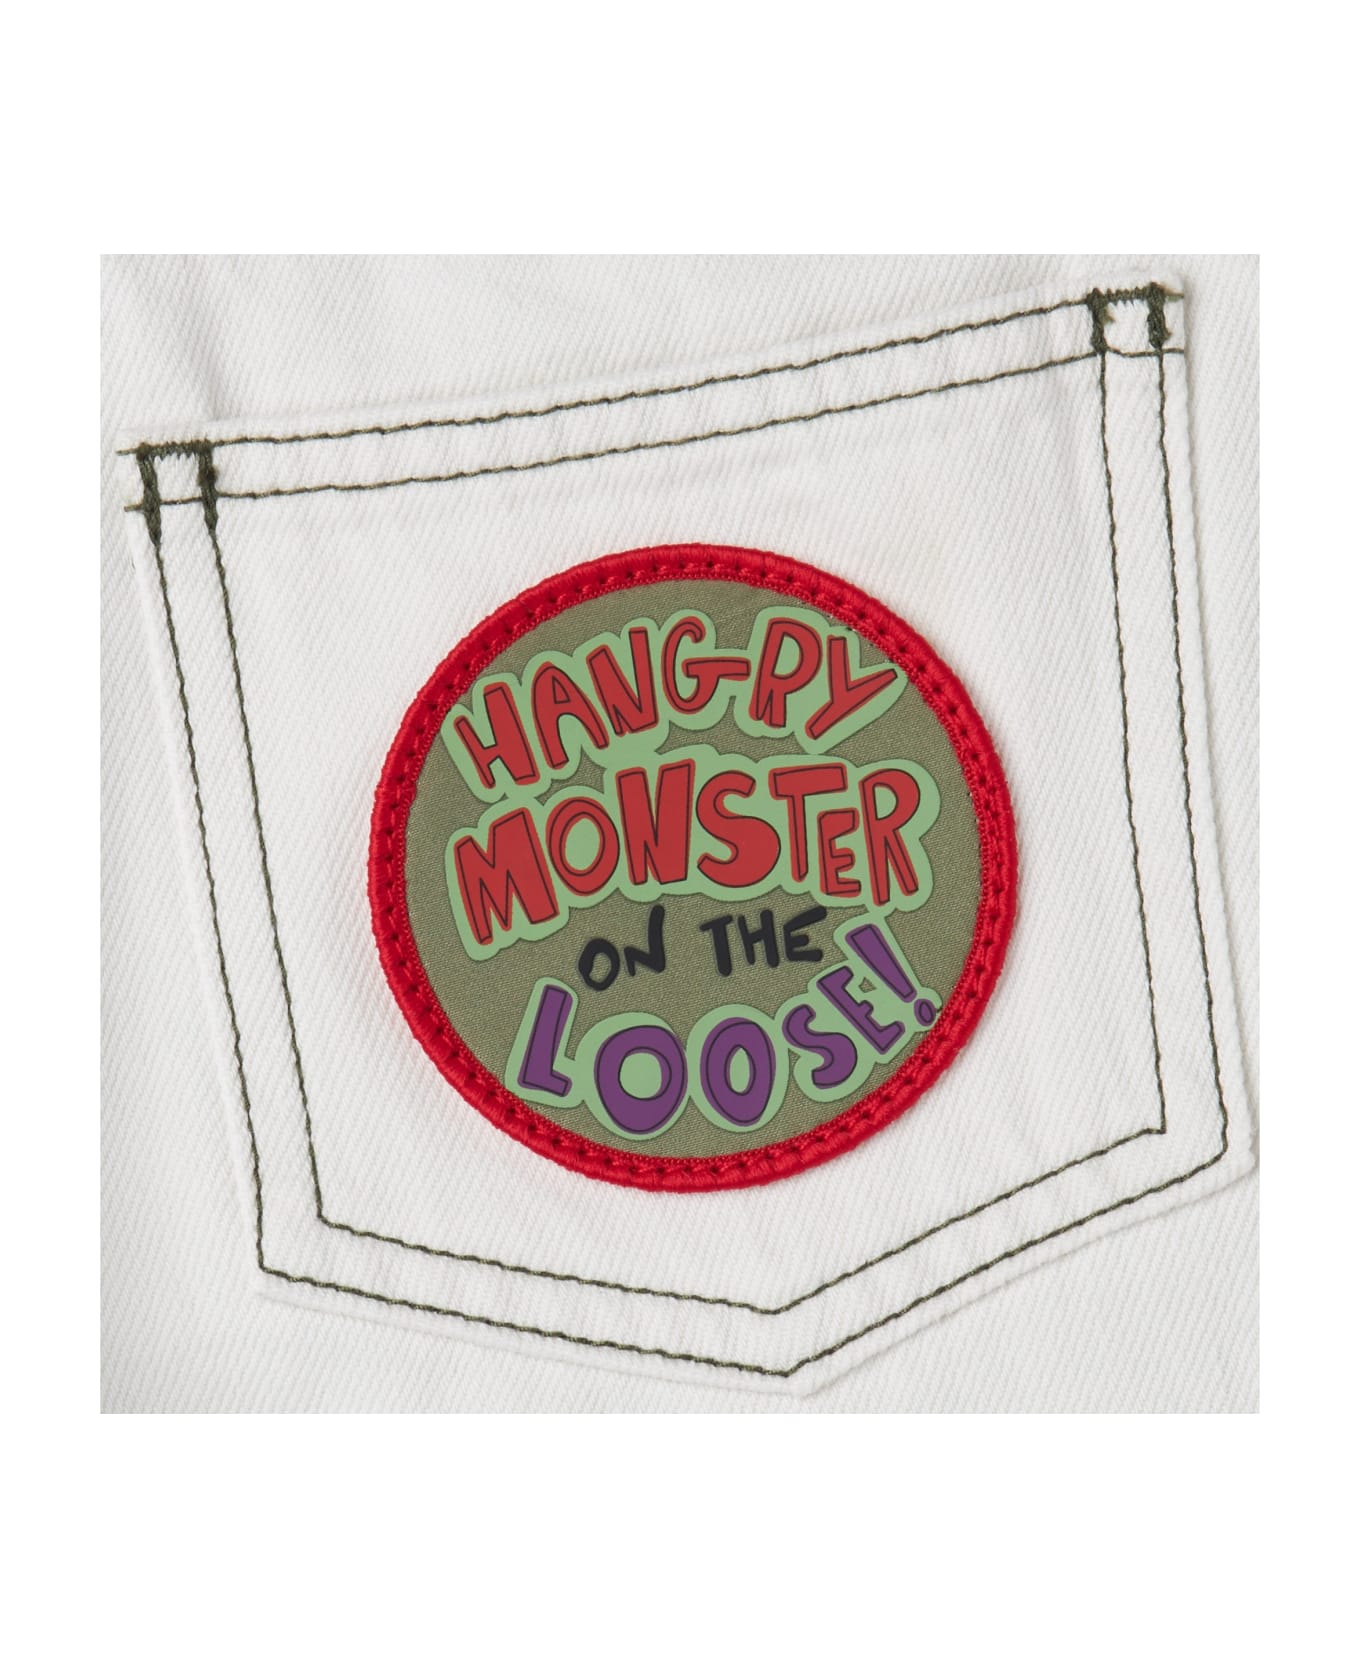 Stella McCartney Burger Monster Denim Shorts - Avorio